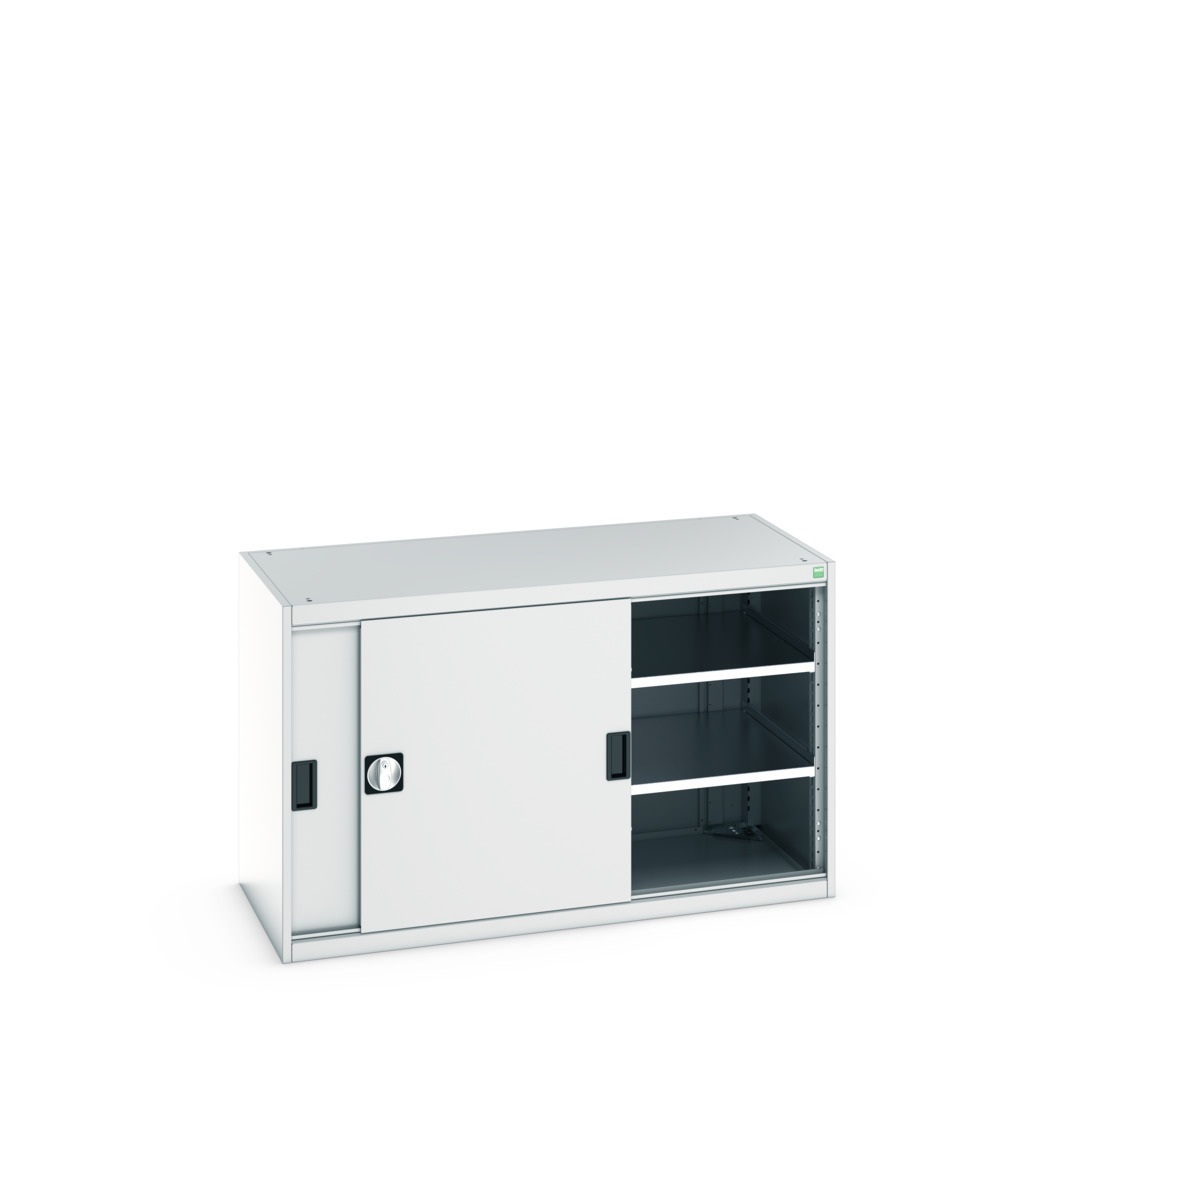 40022061.16V - cubio cupboard